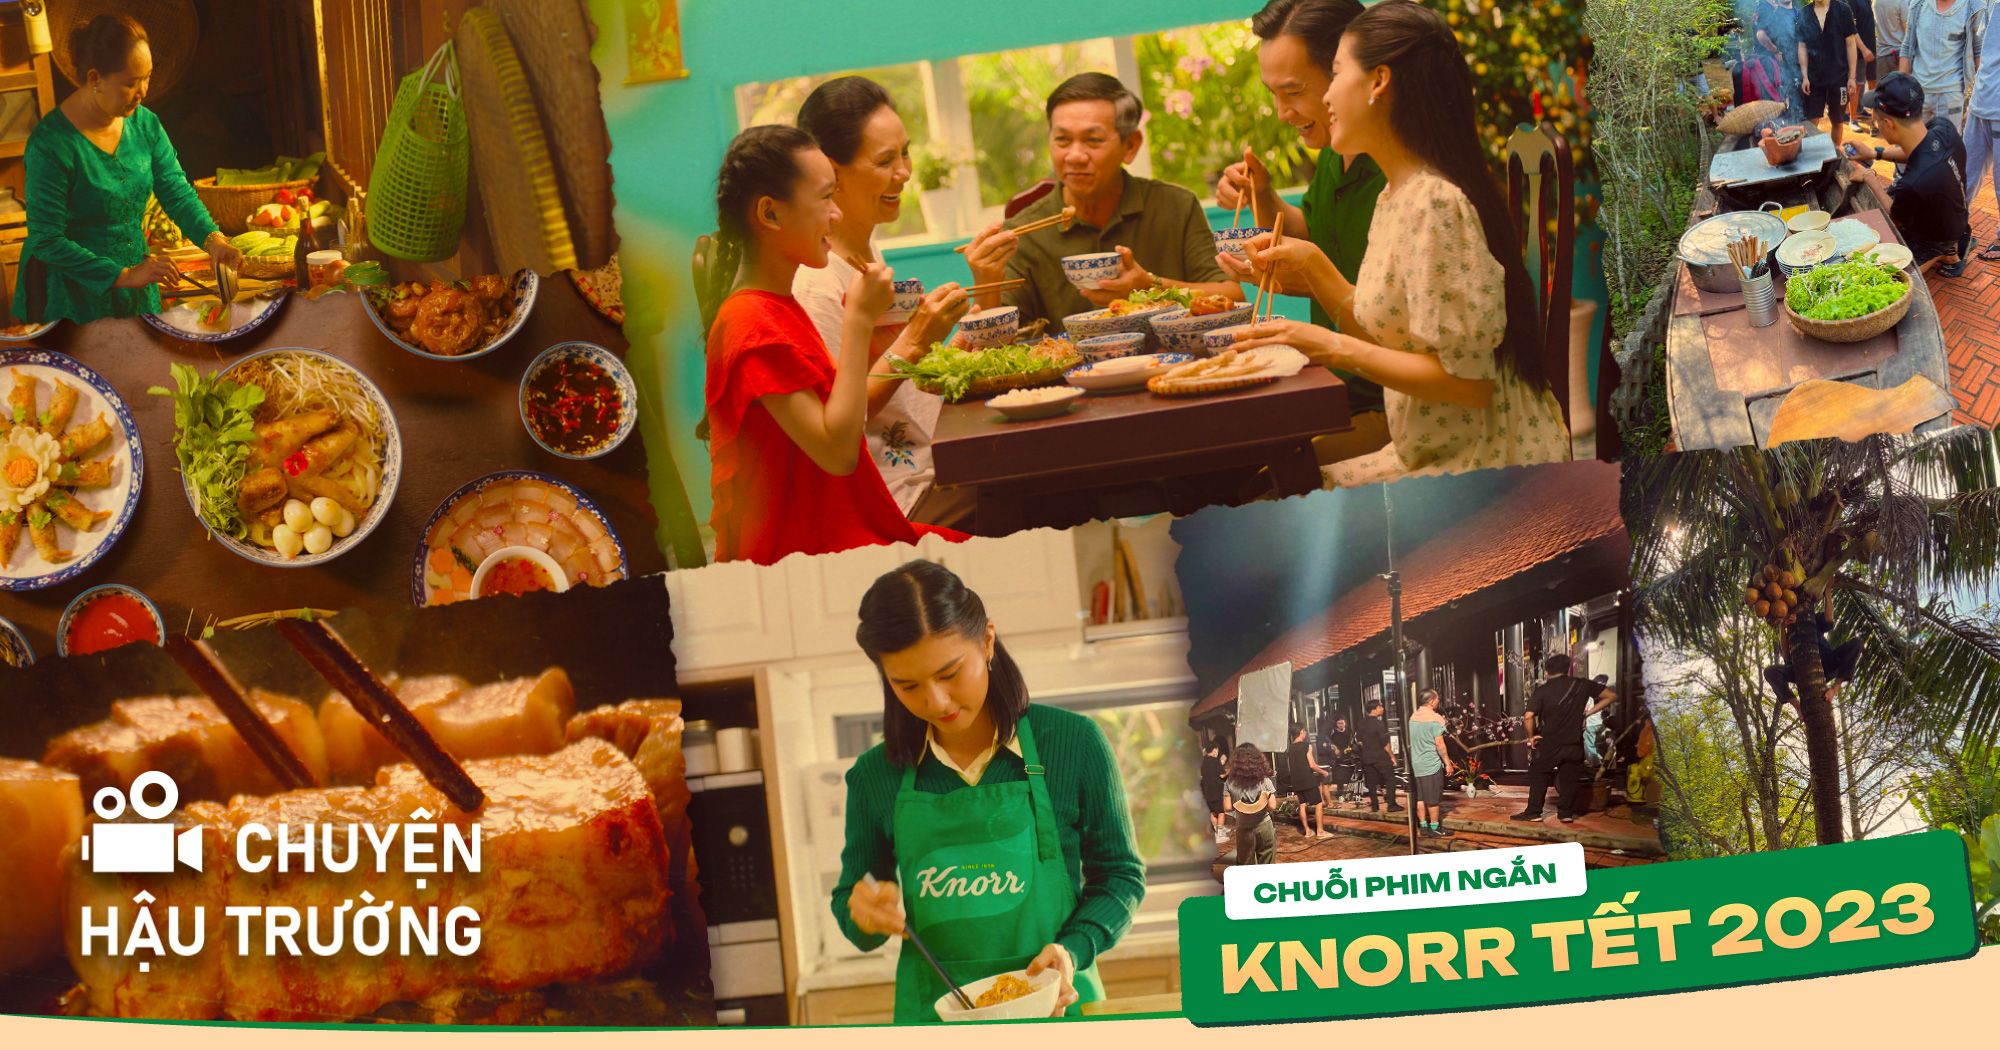 [Chuyện hậu trường] Nhìn lại quá trình sản xuất và khai thác giá trị văn hoá ẩm thực Việt qua chuỗi phim ngắn Knorr Tết 2023